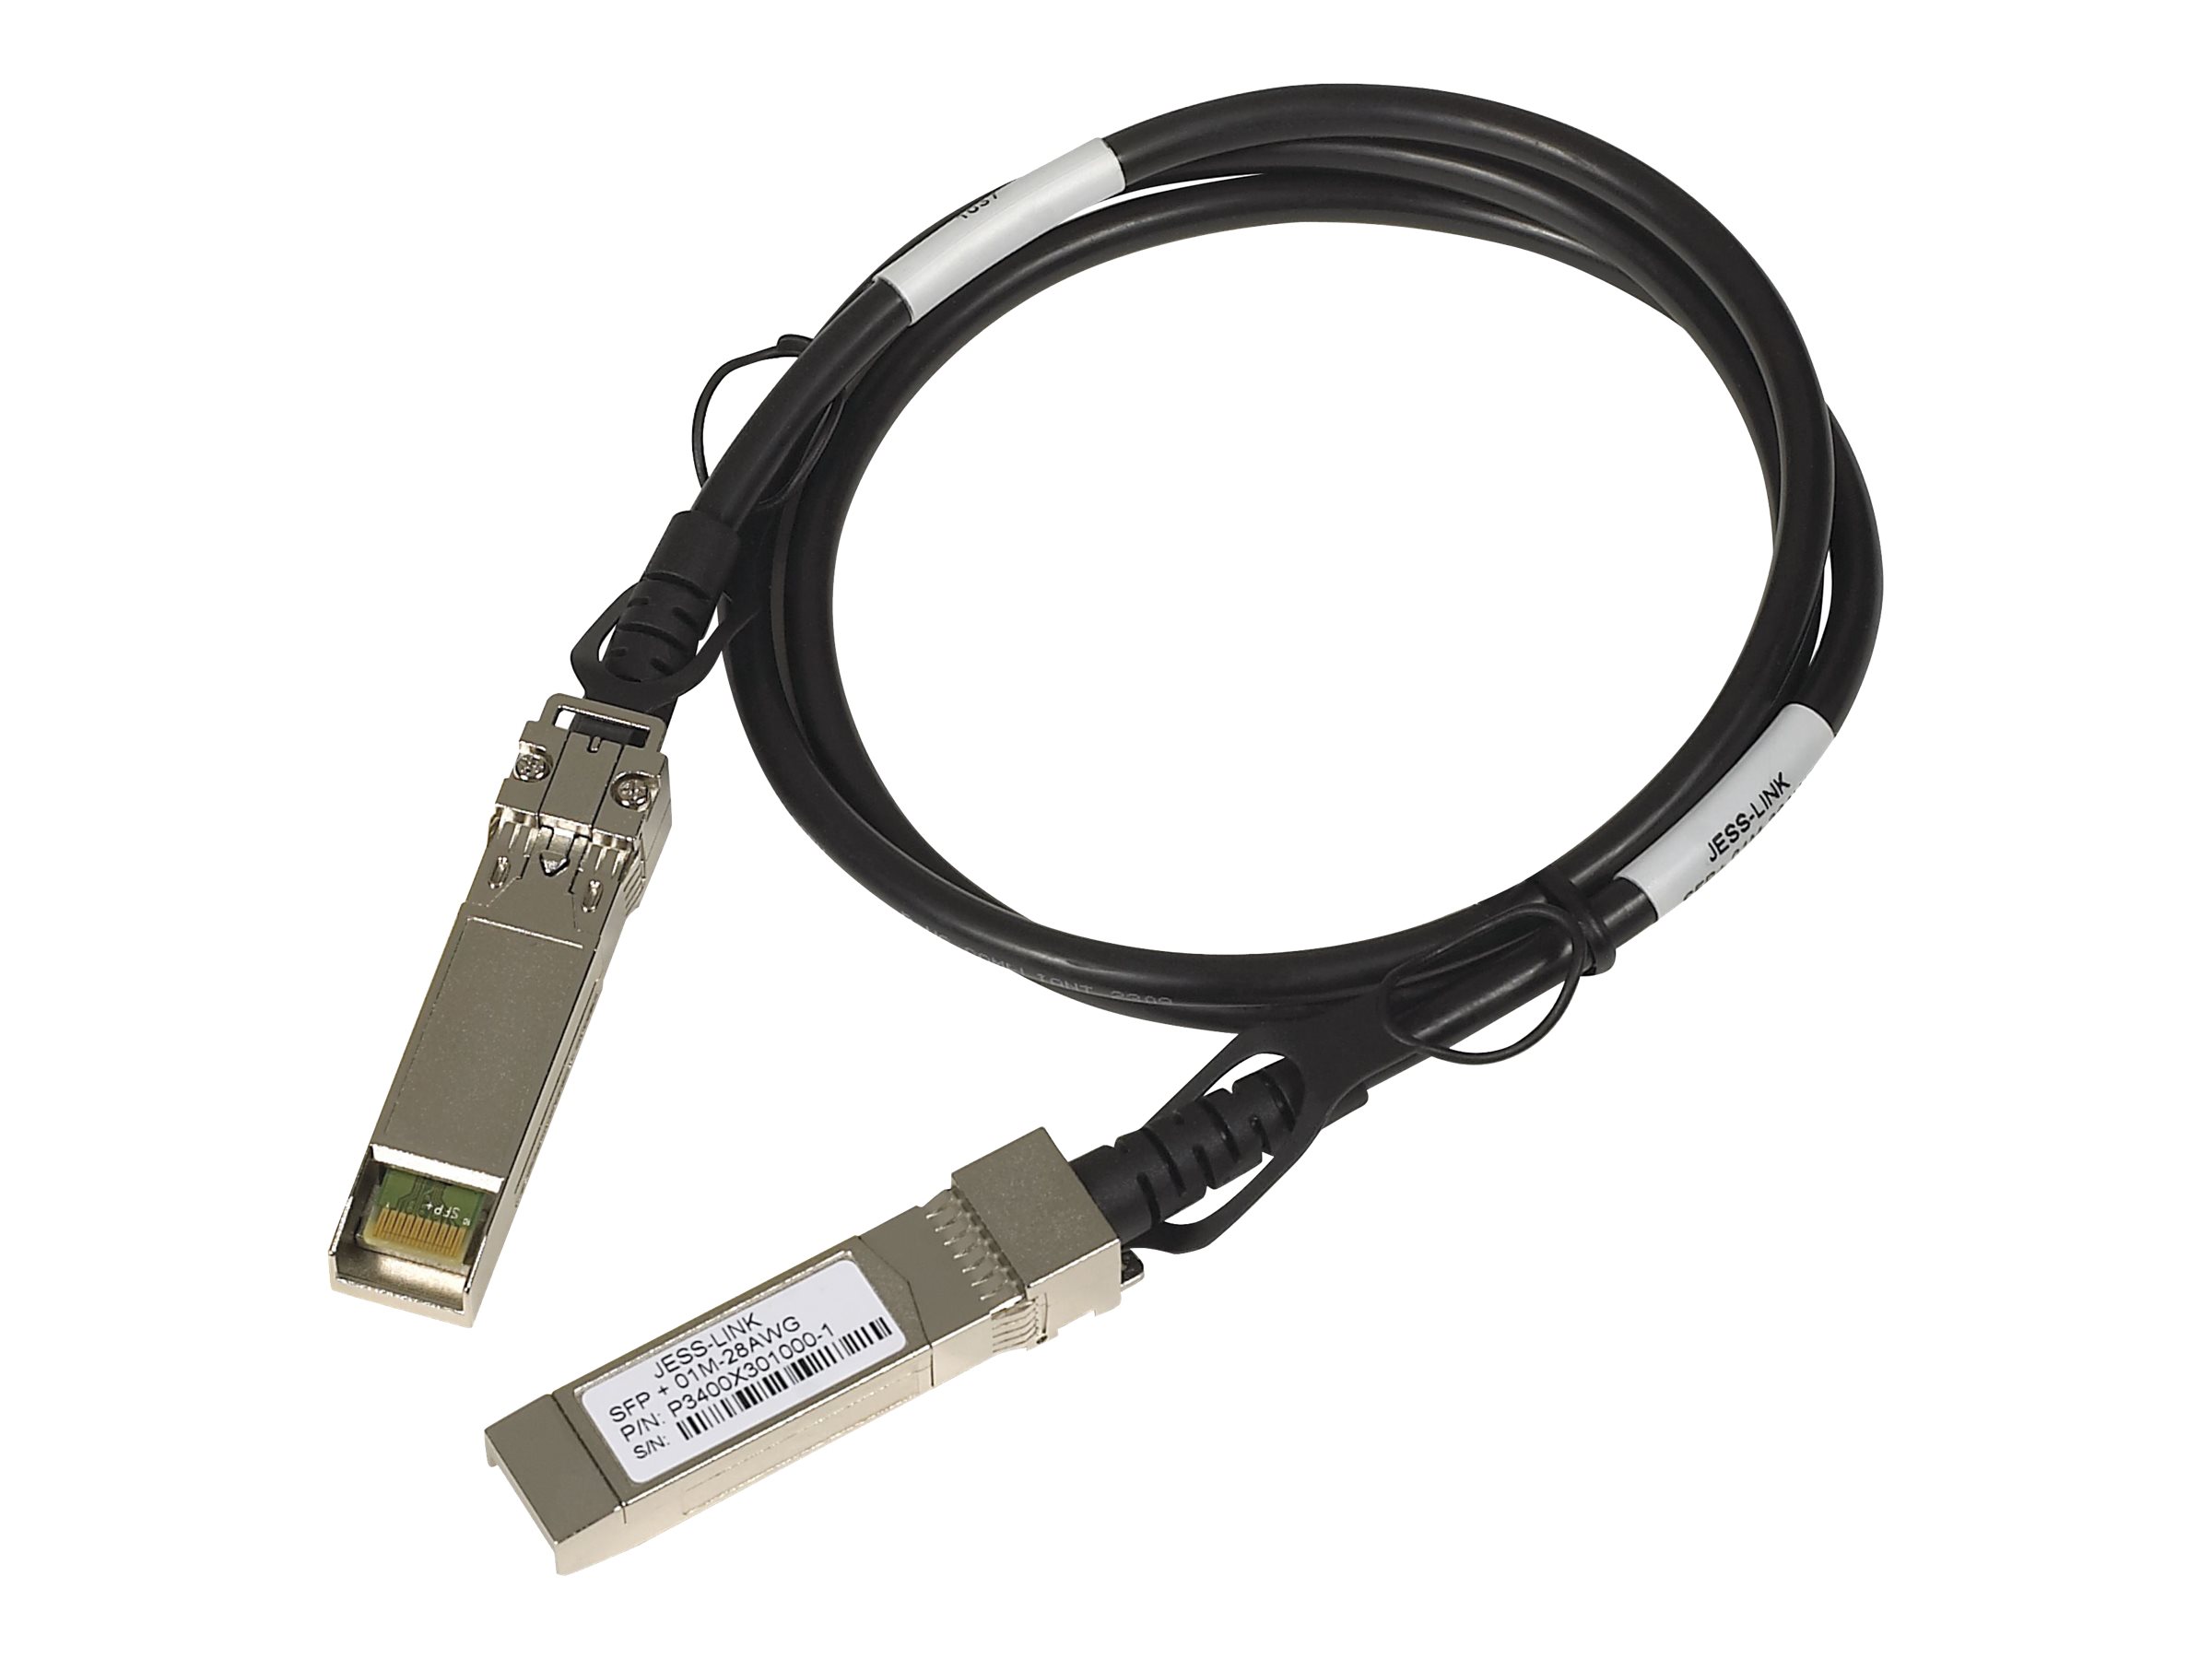 NETGEAR ProSafe - Stacking-Kabel - SFP+ zu SFP+ - 1 m - für NETGEAR GSM7228, GSM7252, GSM7328, GSM7352, M4300; Next-Gen Edge Man